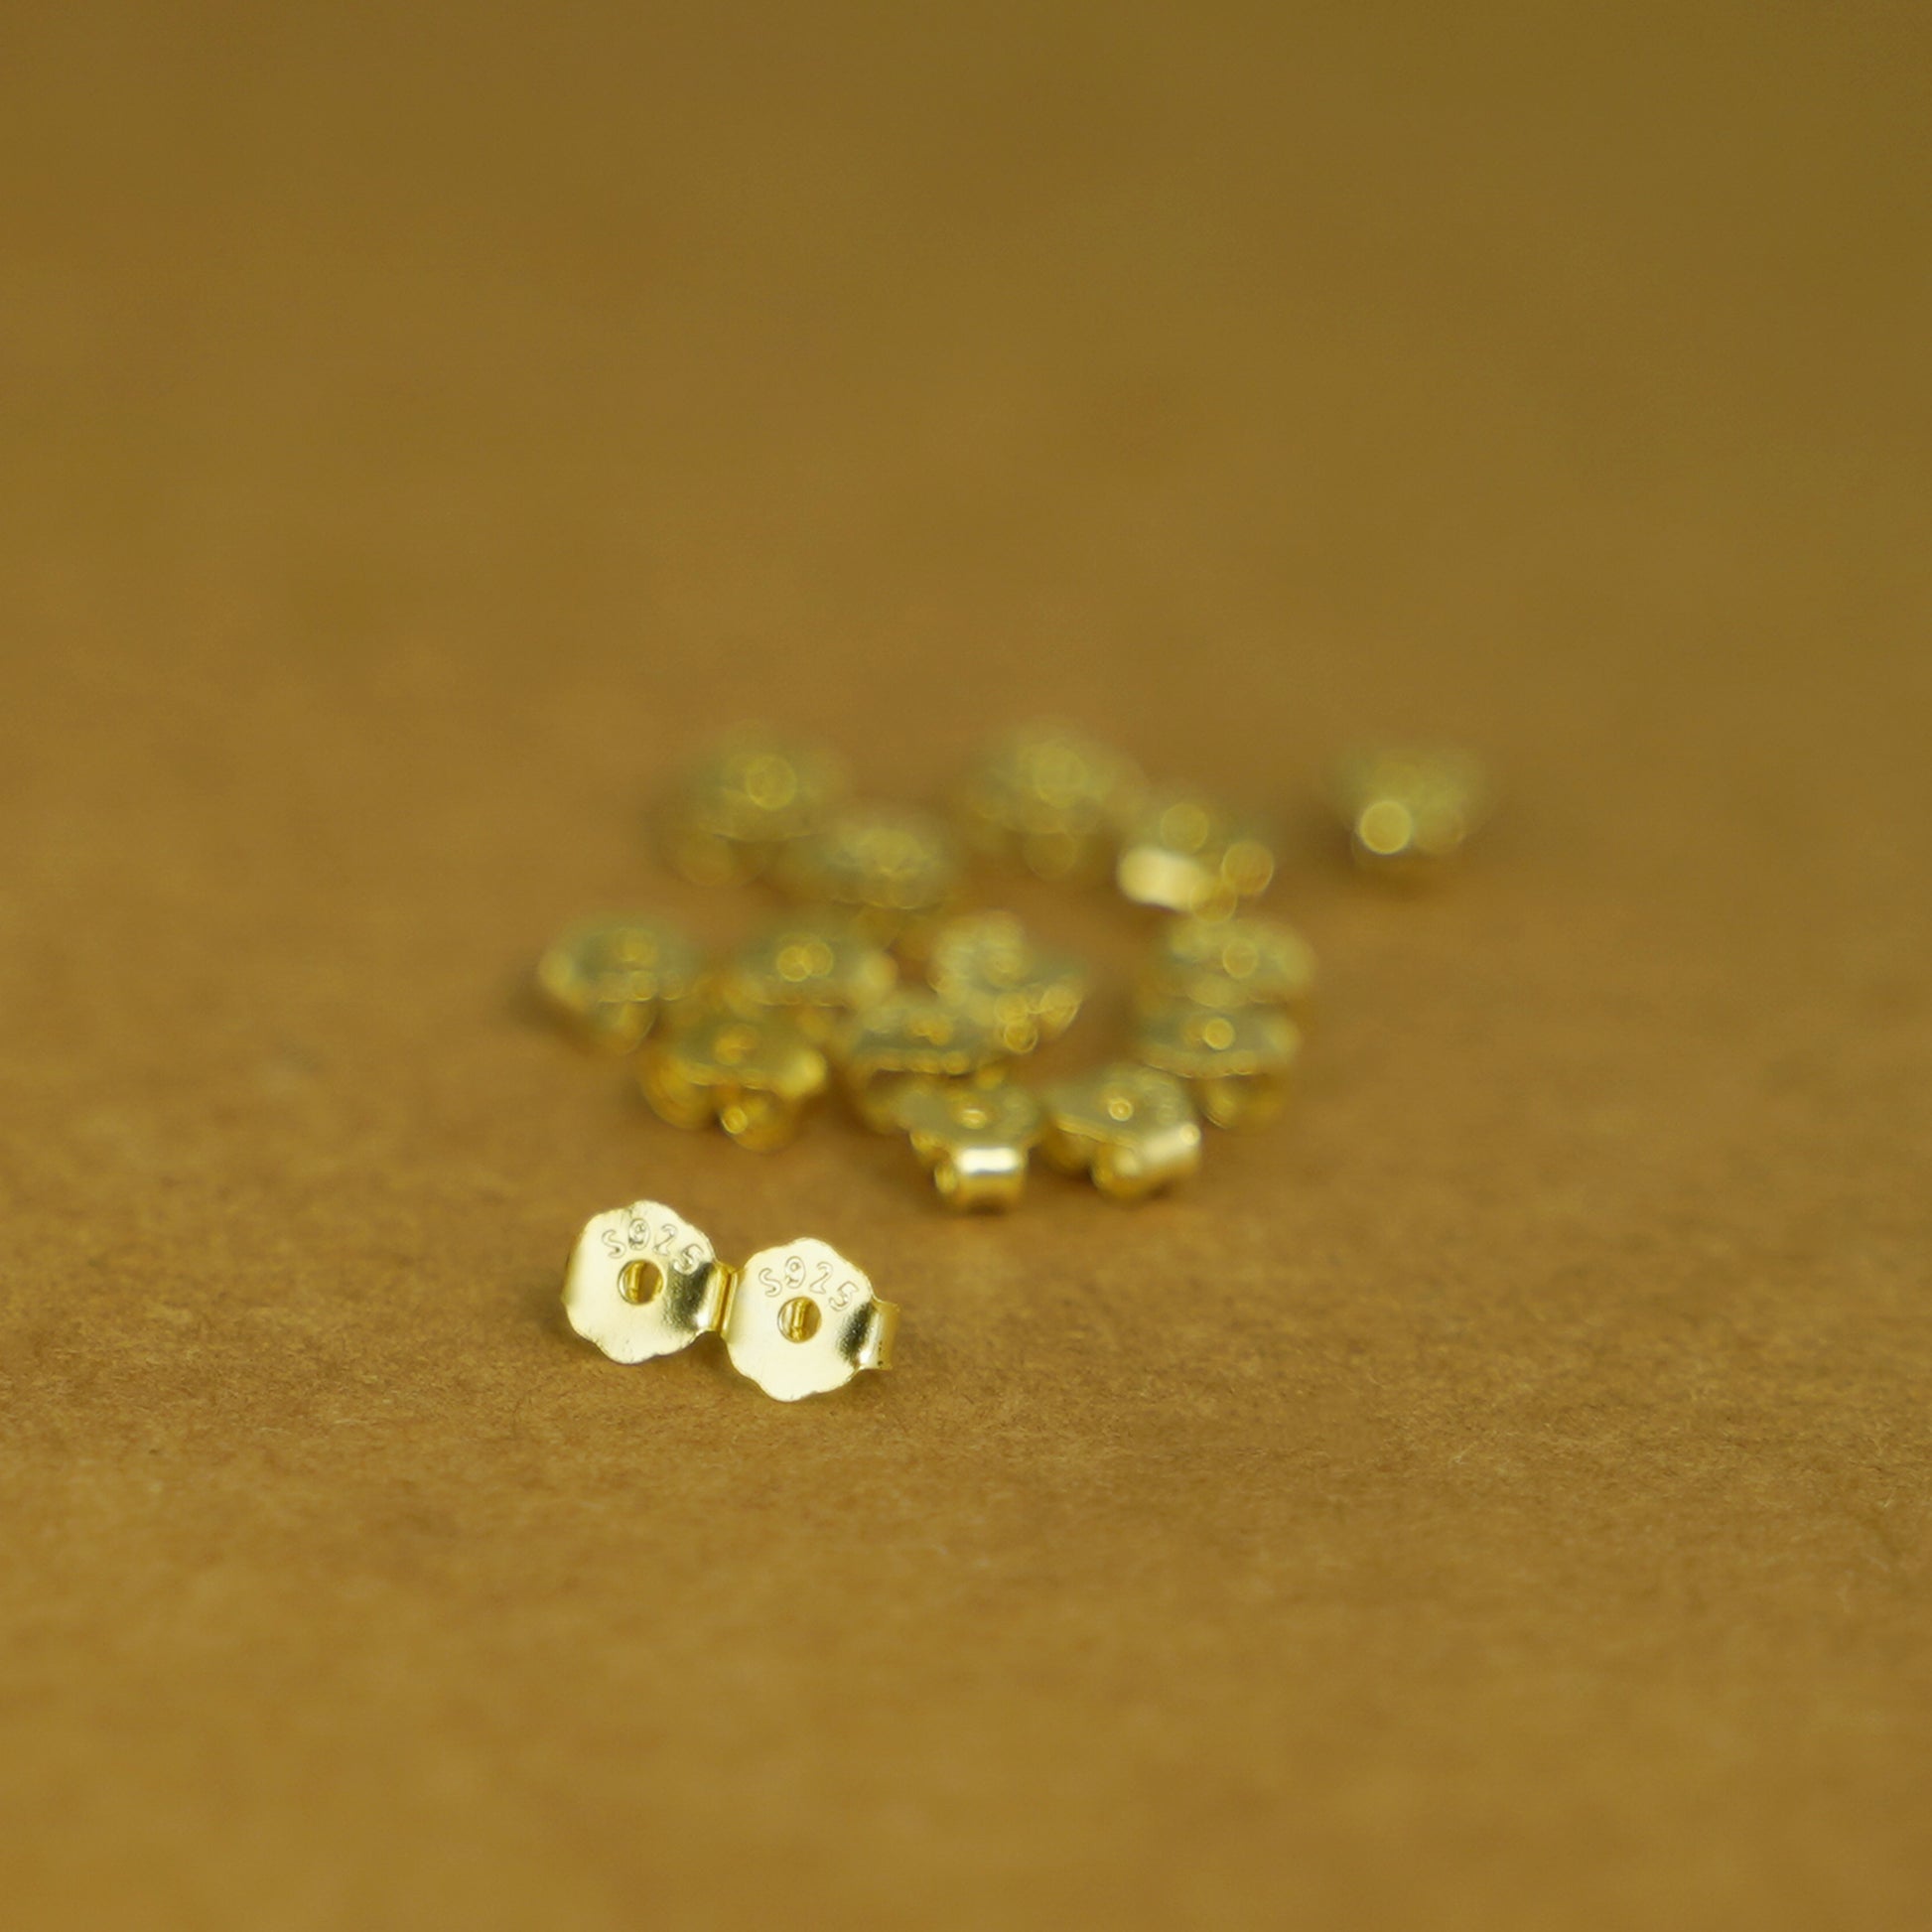 18K Gold on Sterling Silver 4mm Butterfly Backs Fit Stud Earrings Scroll Stopper - sugarkittenlondon